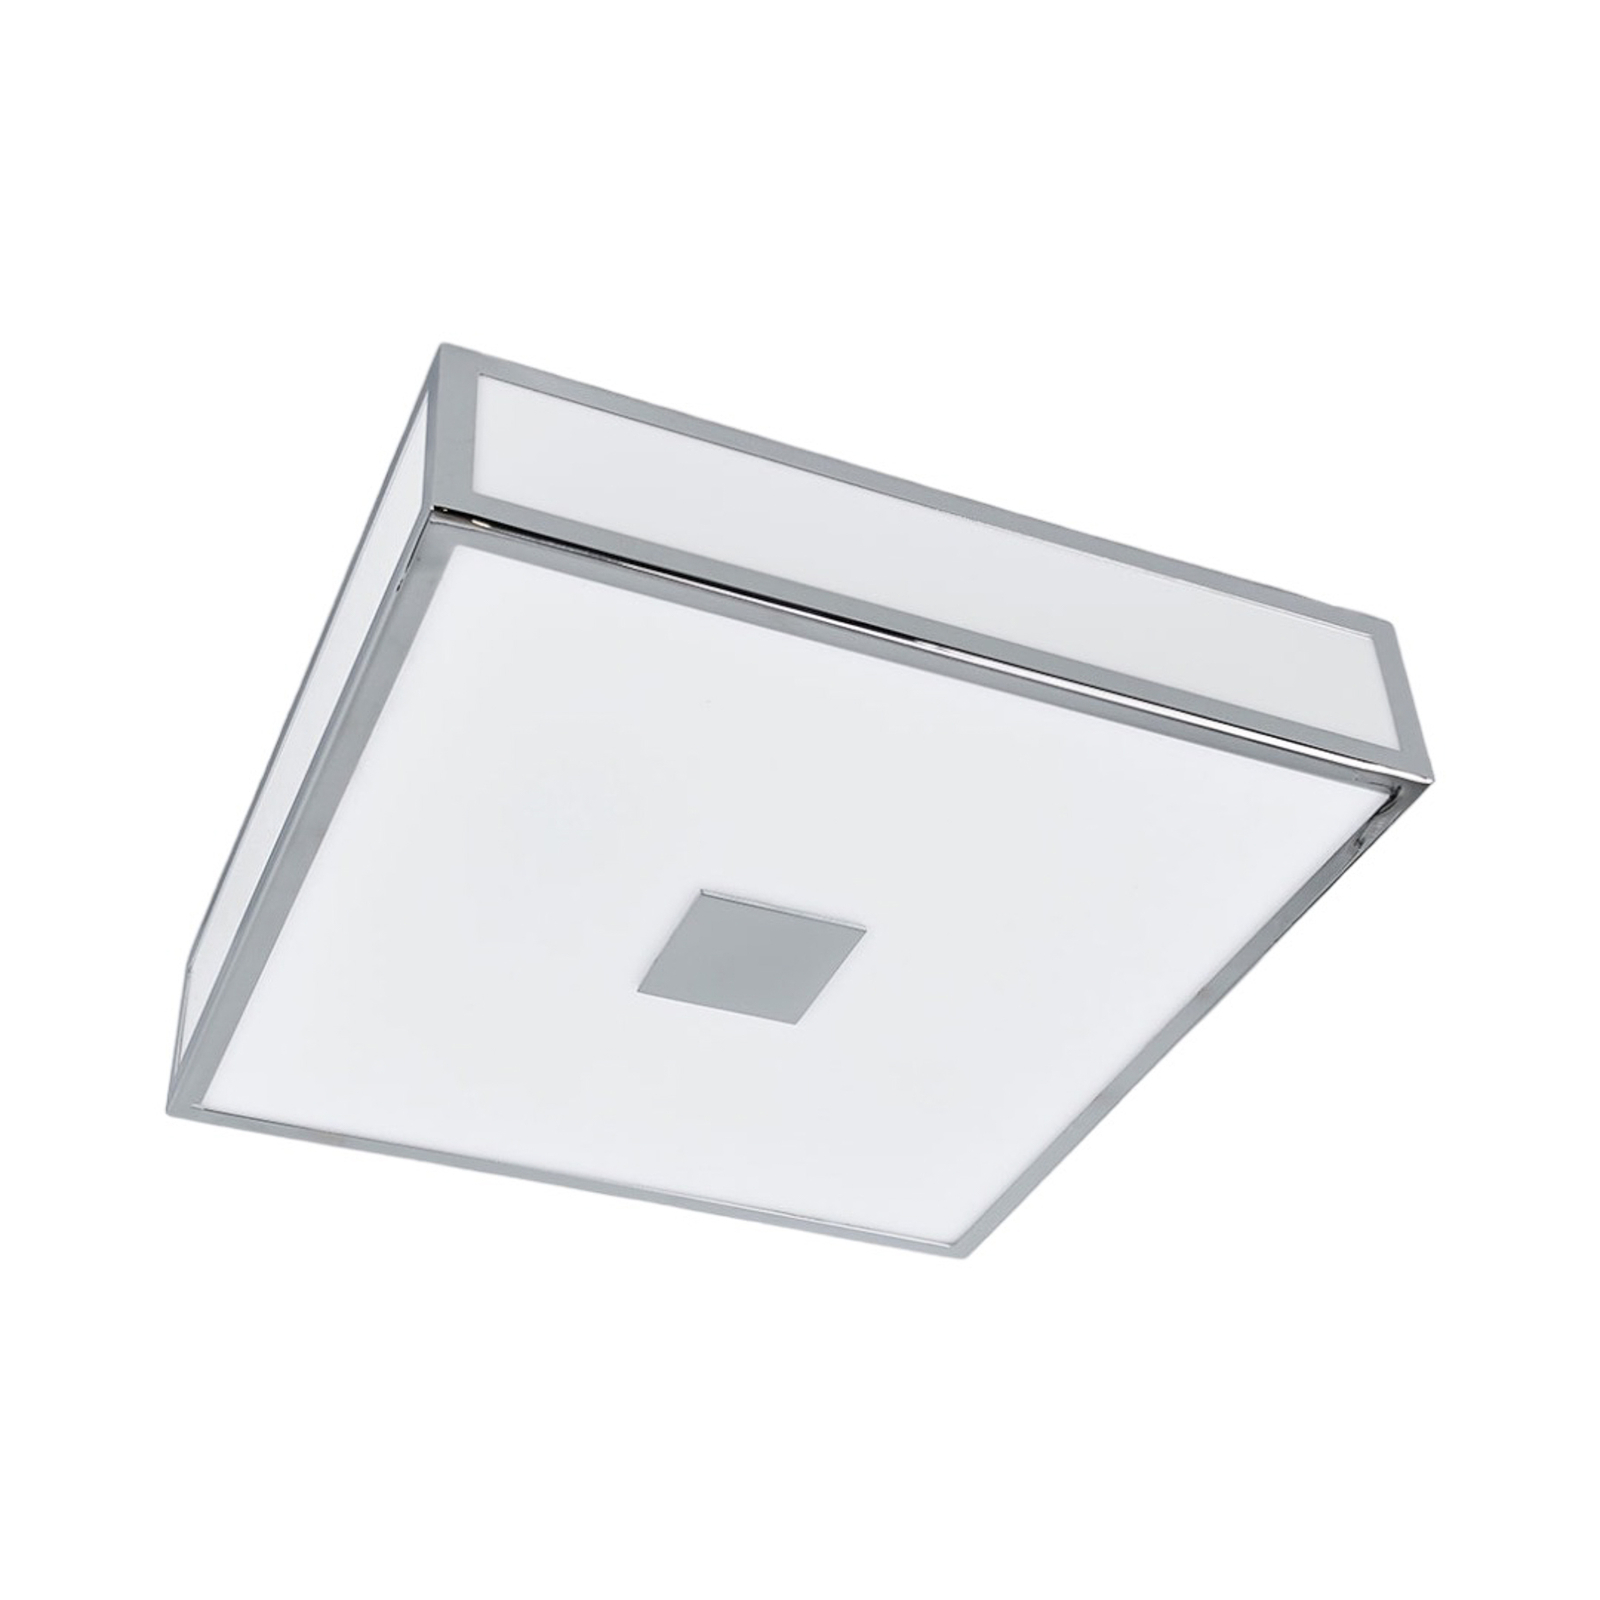 Chrome-plated bathroom ceiling lamp Eniola